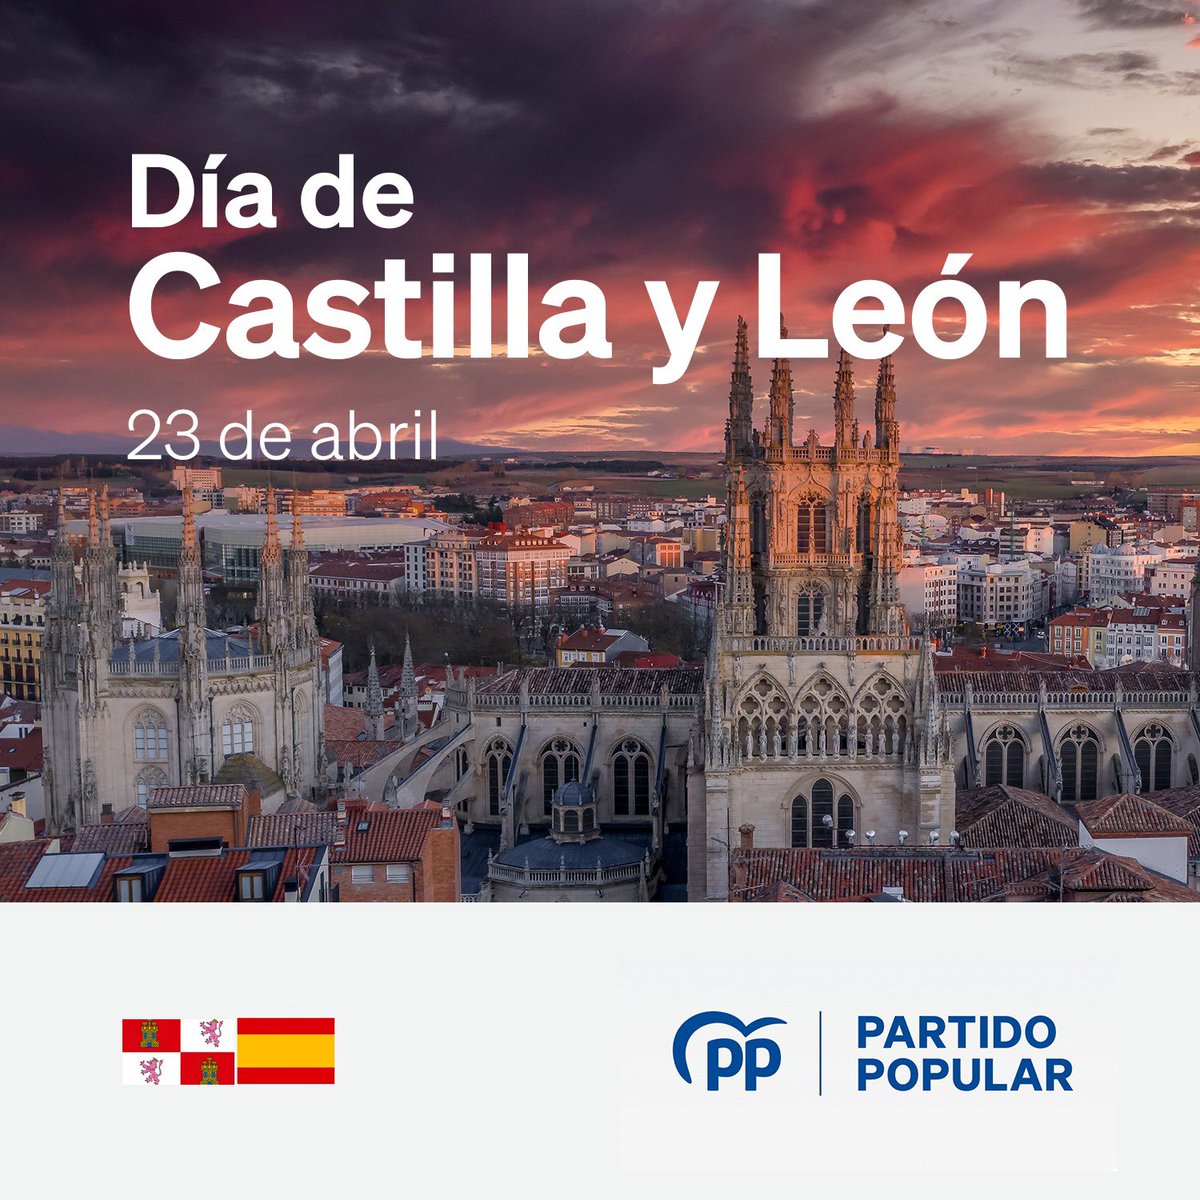 ¡Felicidades a todos los castellanoleoneses en el #DíaDeCastillayLeón! Una tierra con un gran legado que enriquece a España con su historia, tradiciones, naturaleza y gastronomía.